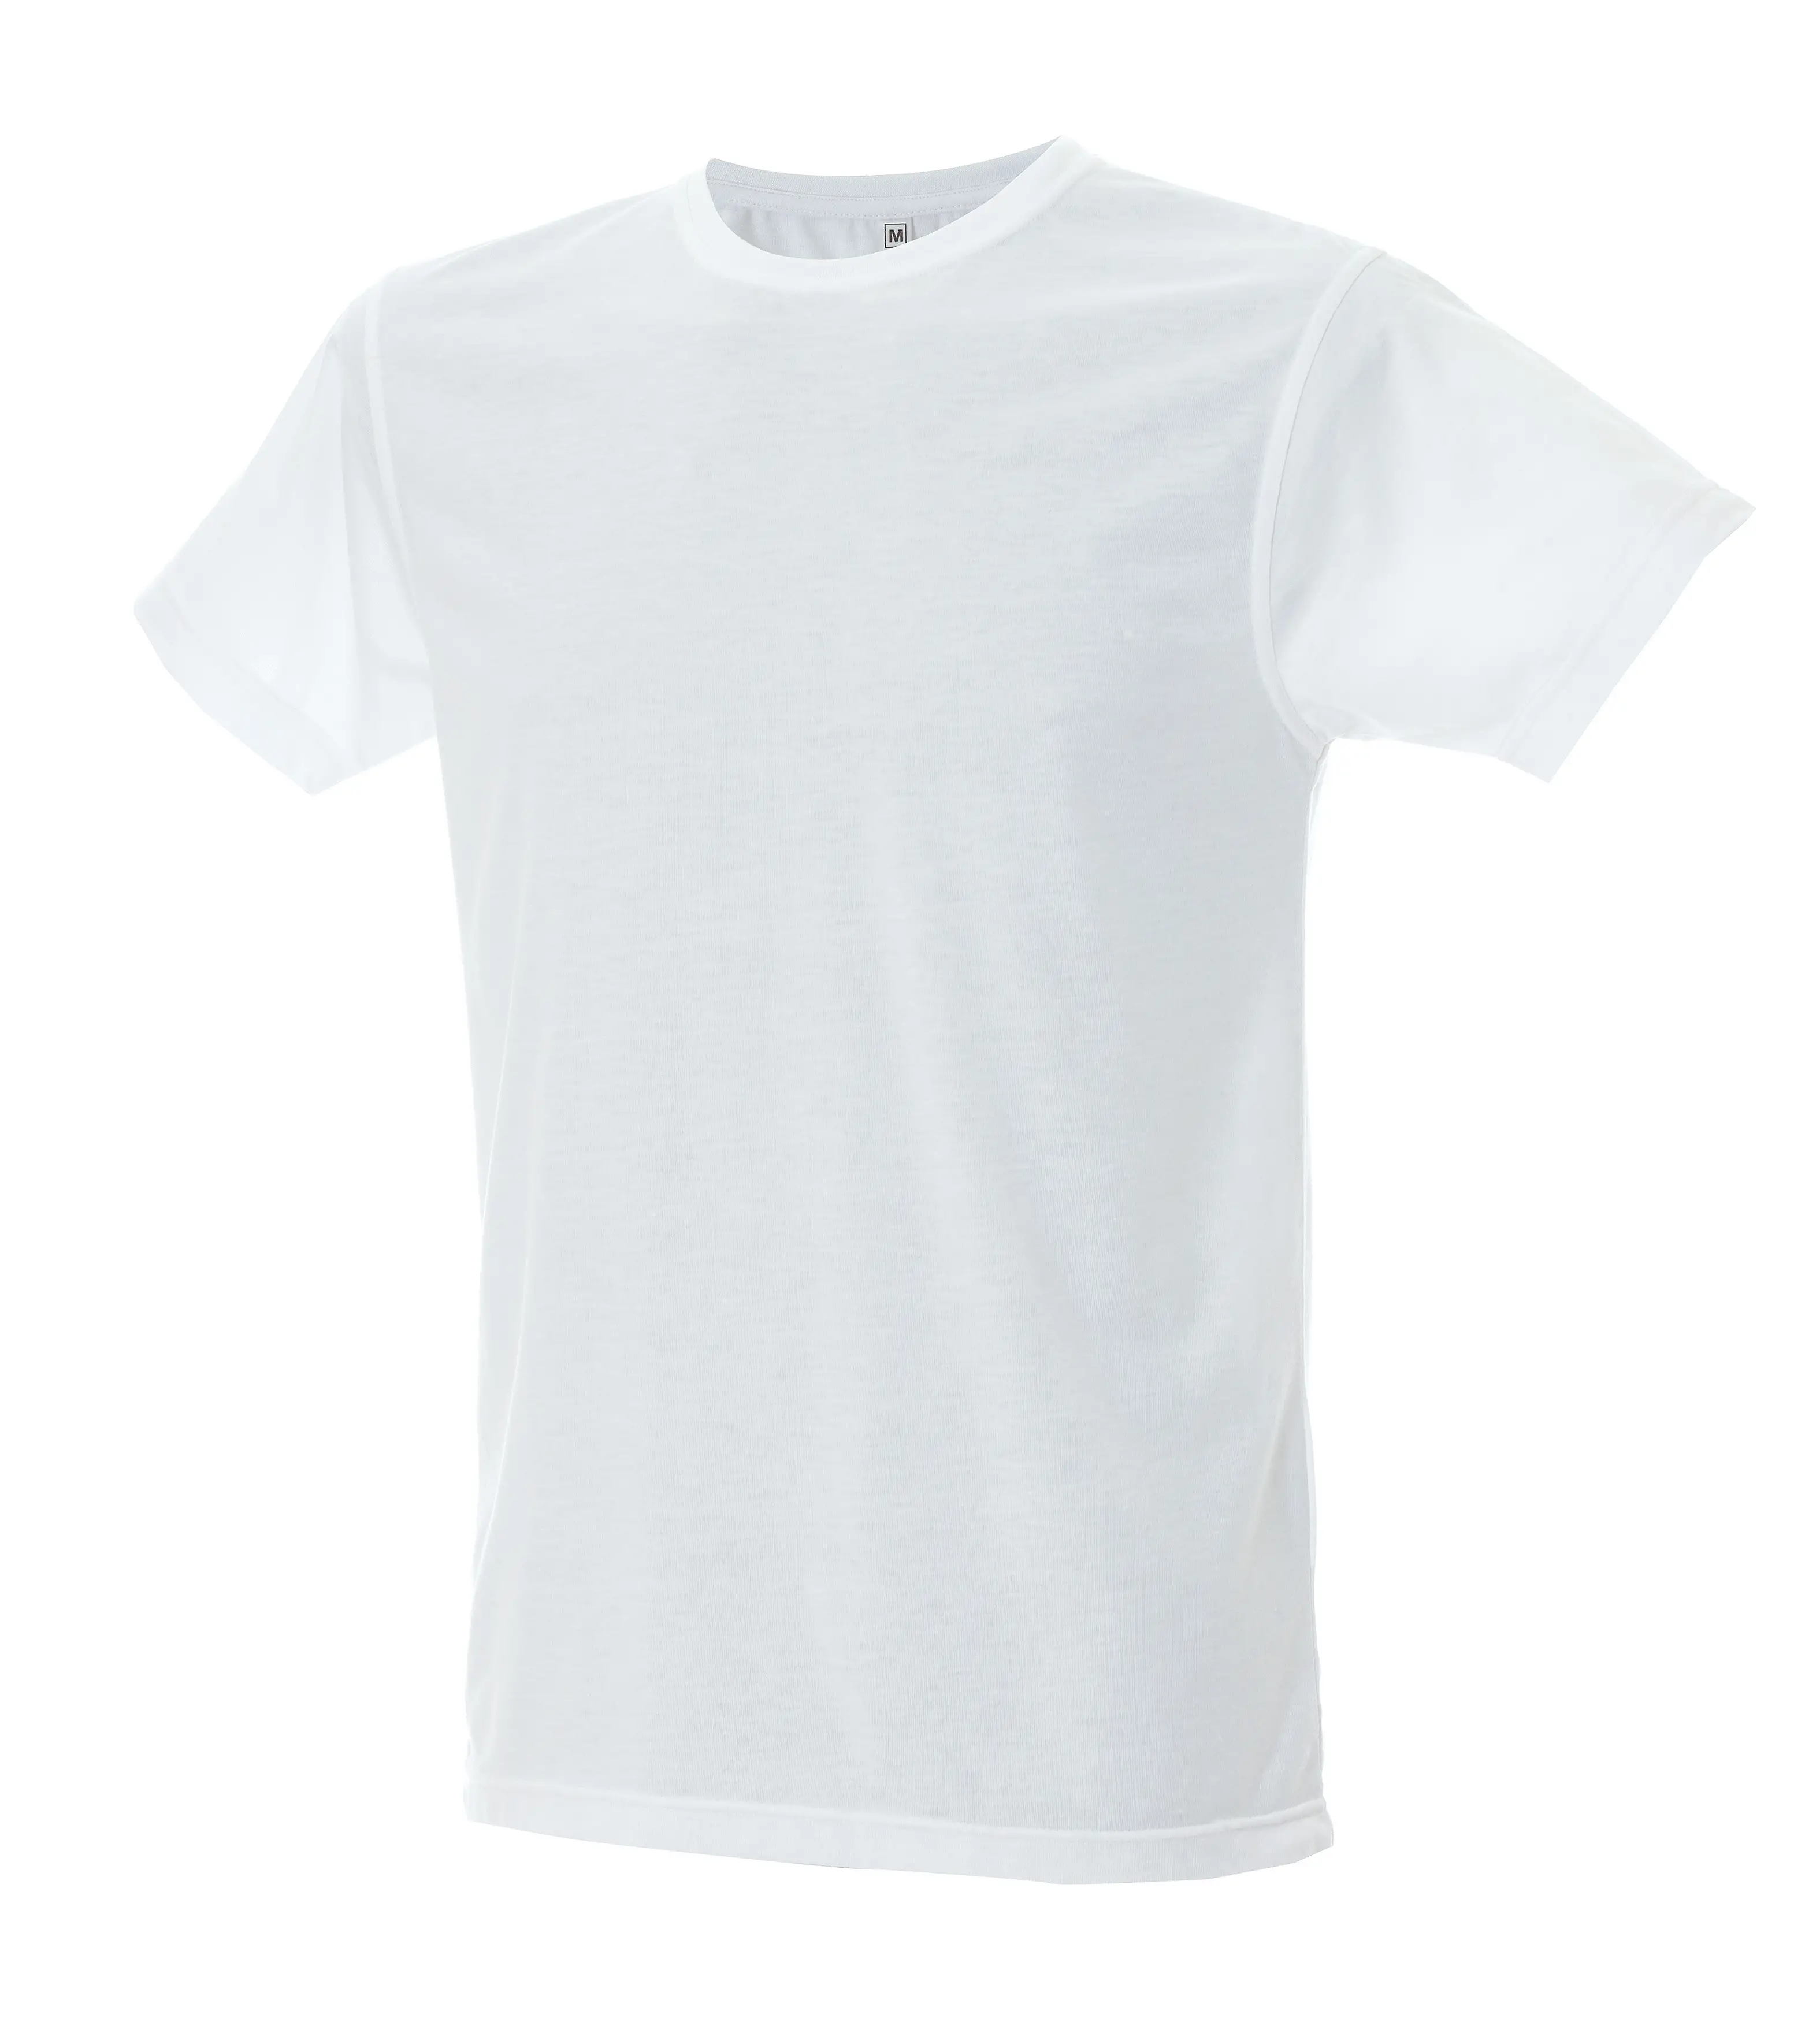 T-shirt florida man - white - m